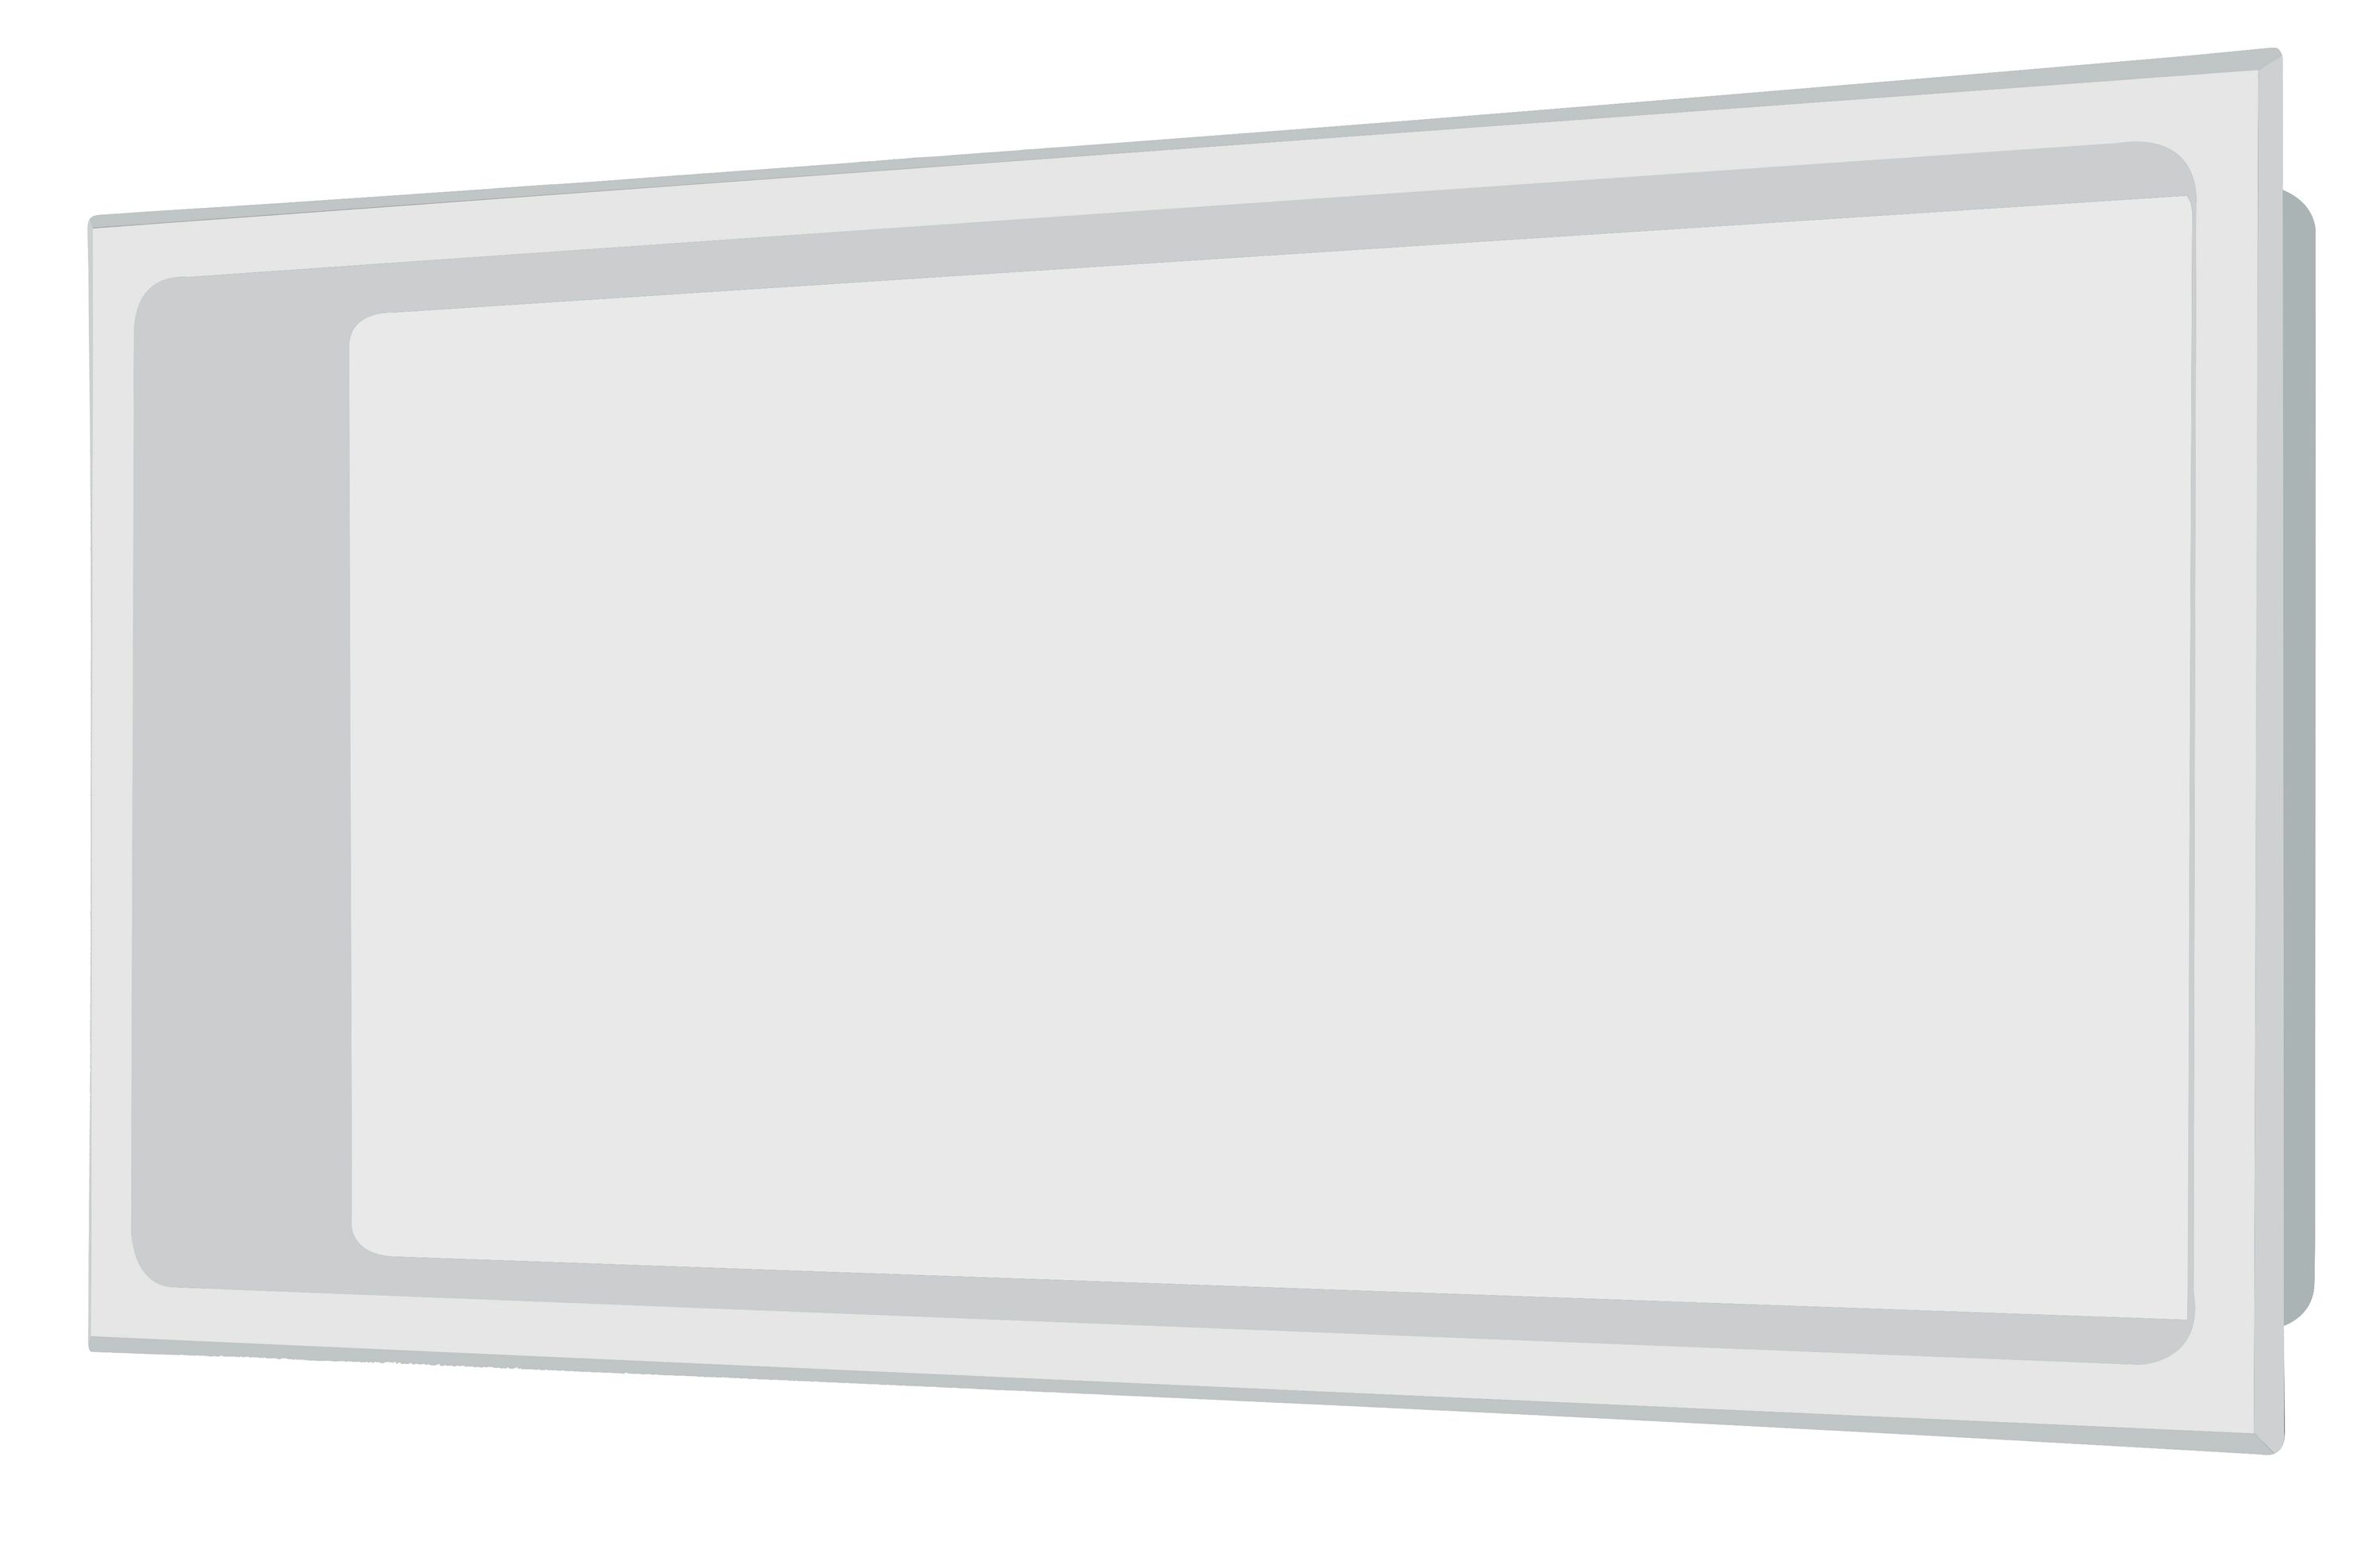 Edelstahl Wandnische in 30 x 60 cm